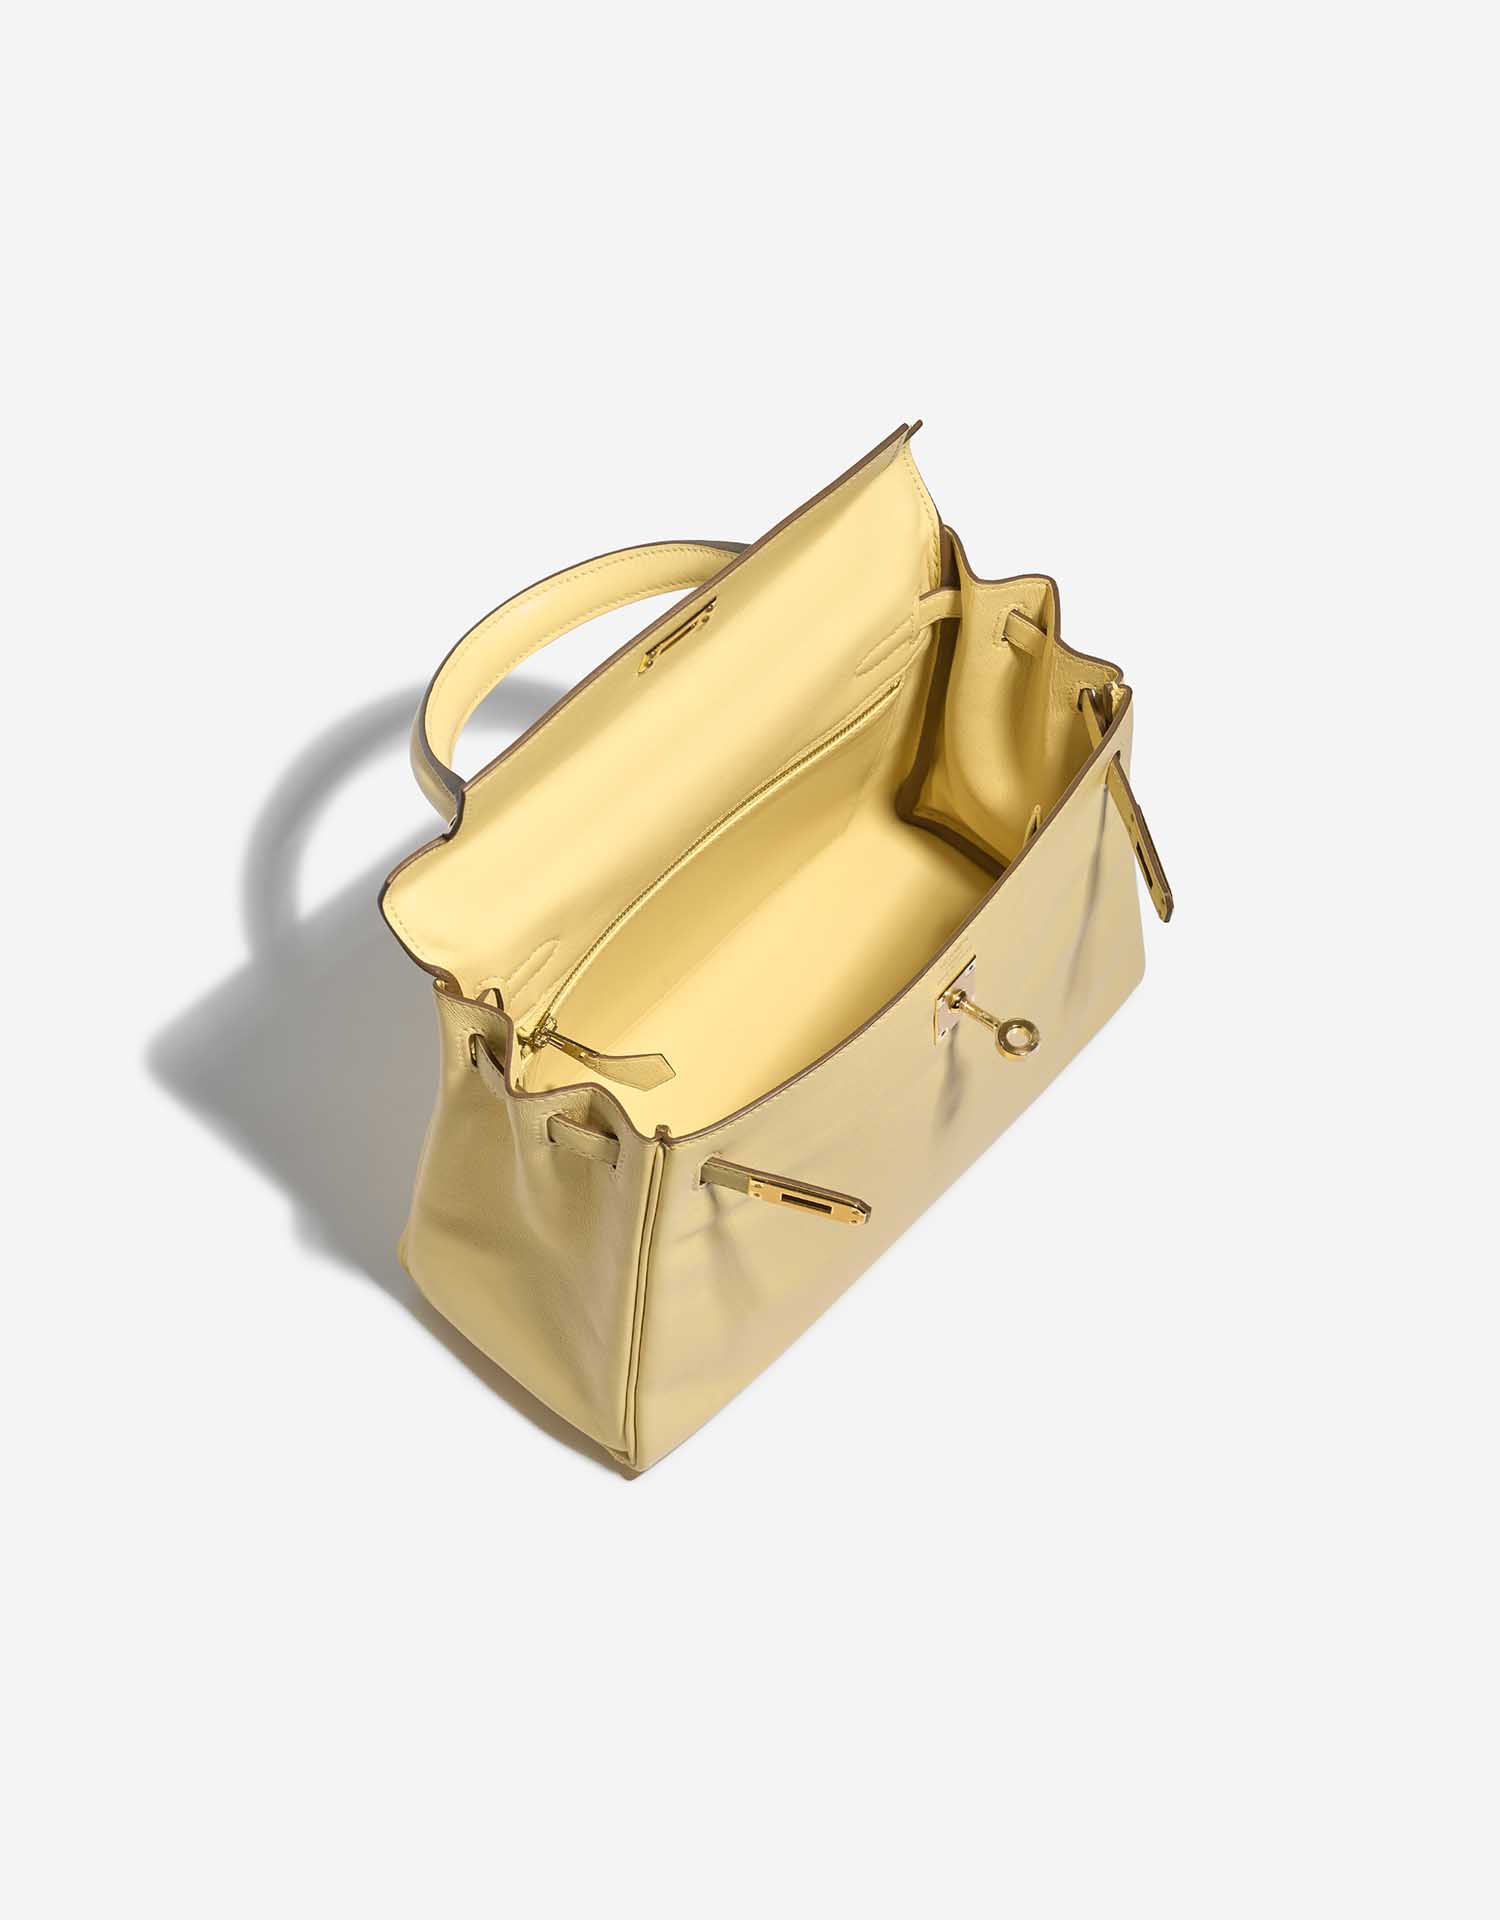 Sac Hermès d'occasion Kelly 25 Swift Jaune Poussin Yellow Inside | Vendez votre sac de créateur sur Saclab.com